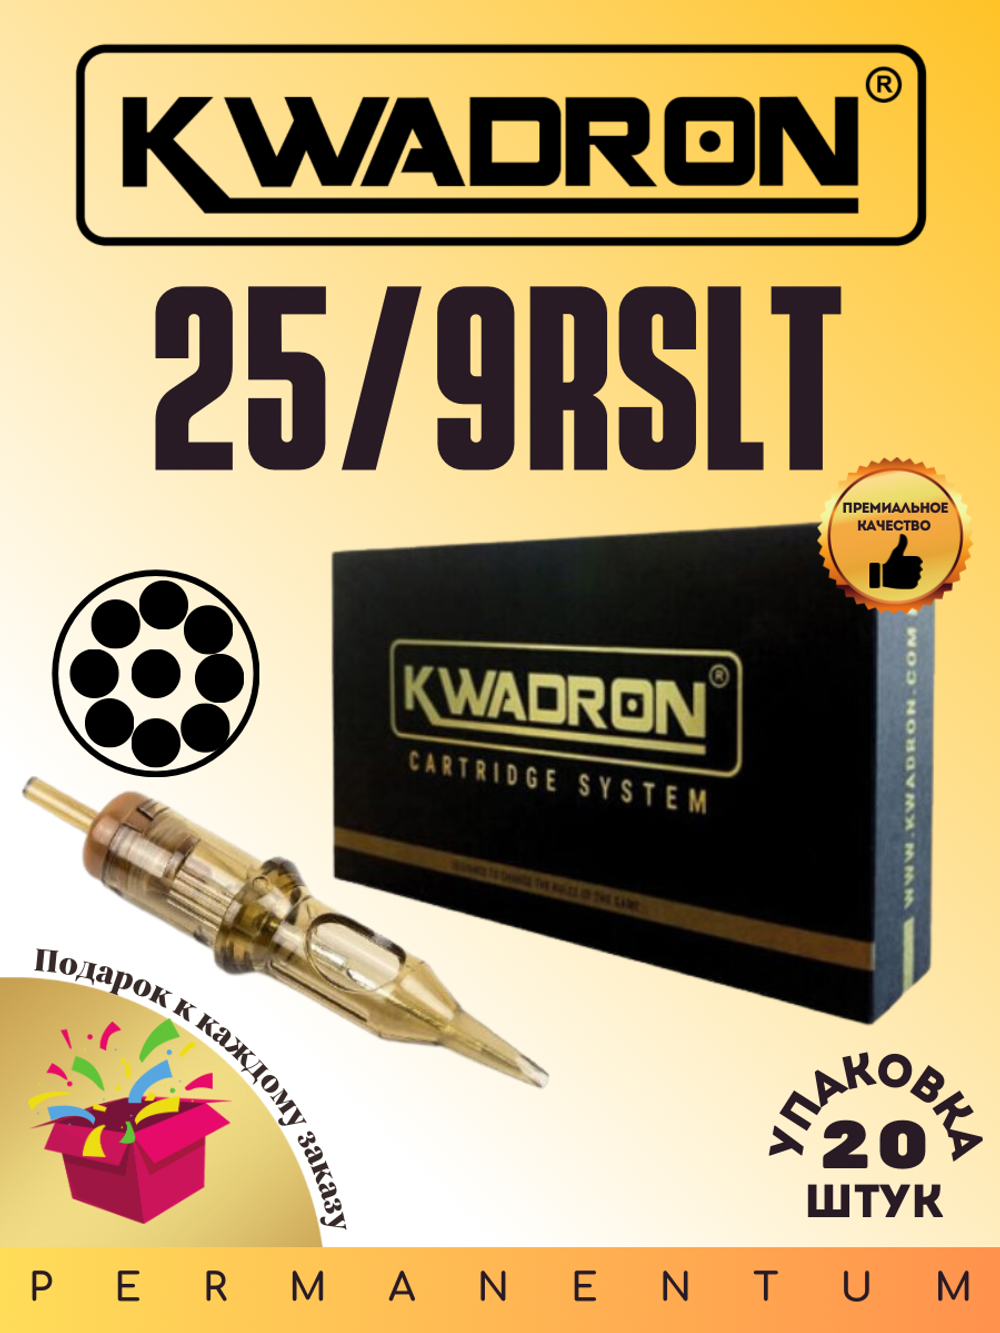 Картридж для татуажа "KWADRON Round Liner 25/9RSLT" упаковка 20 шт.